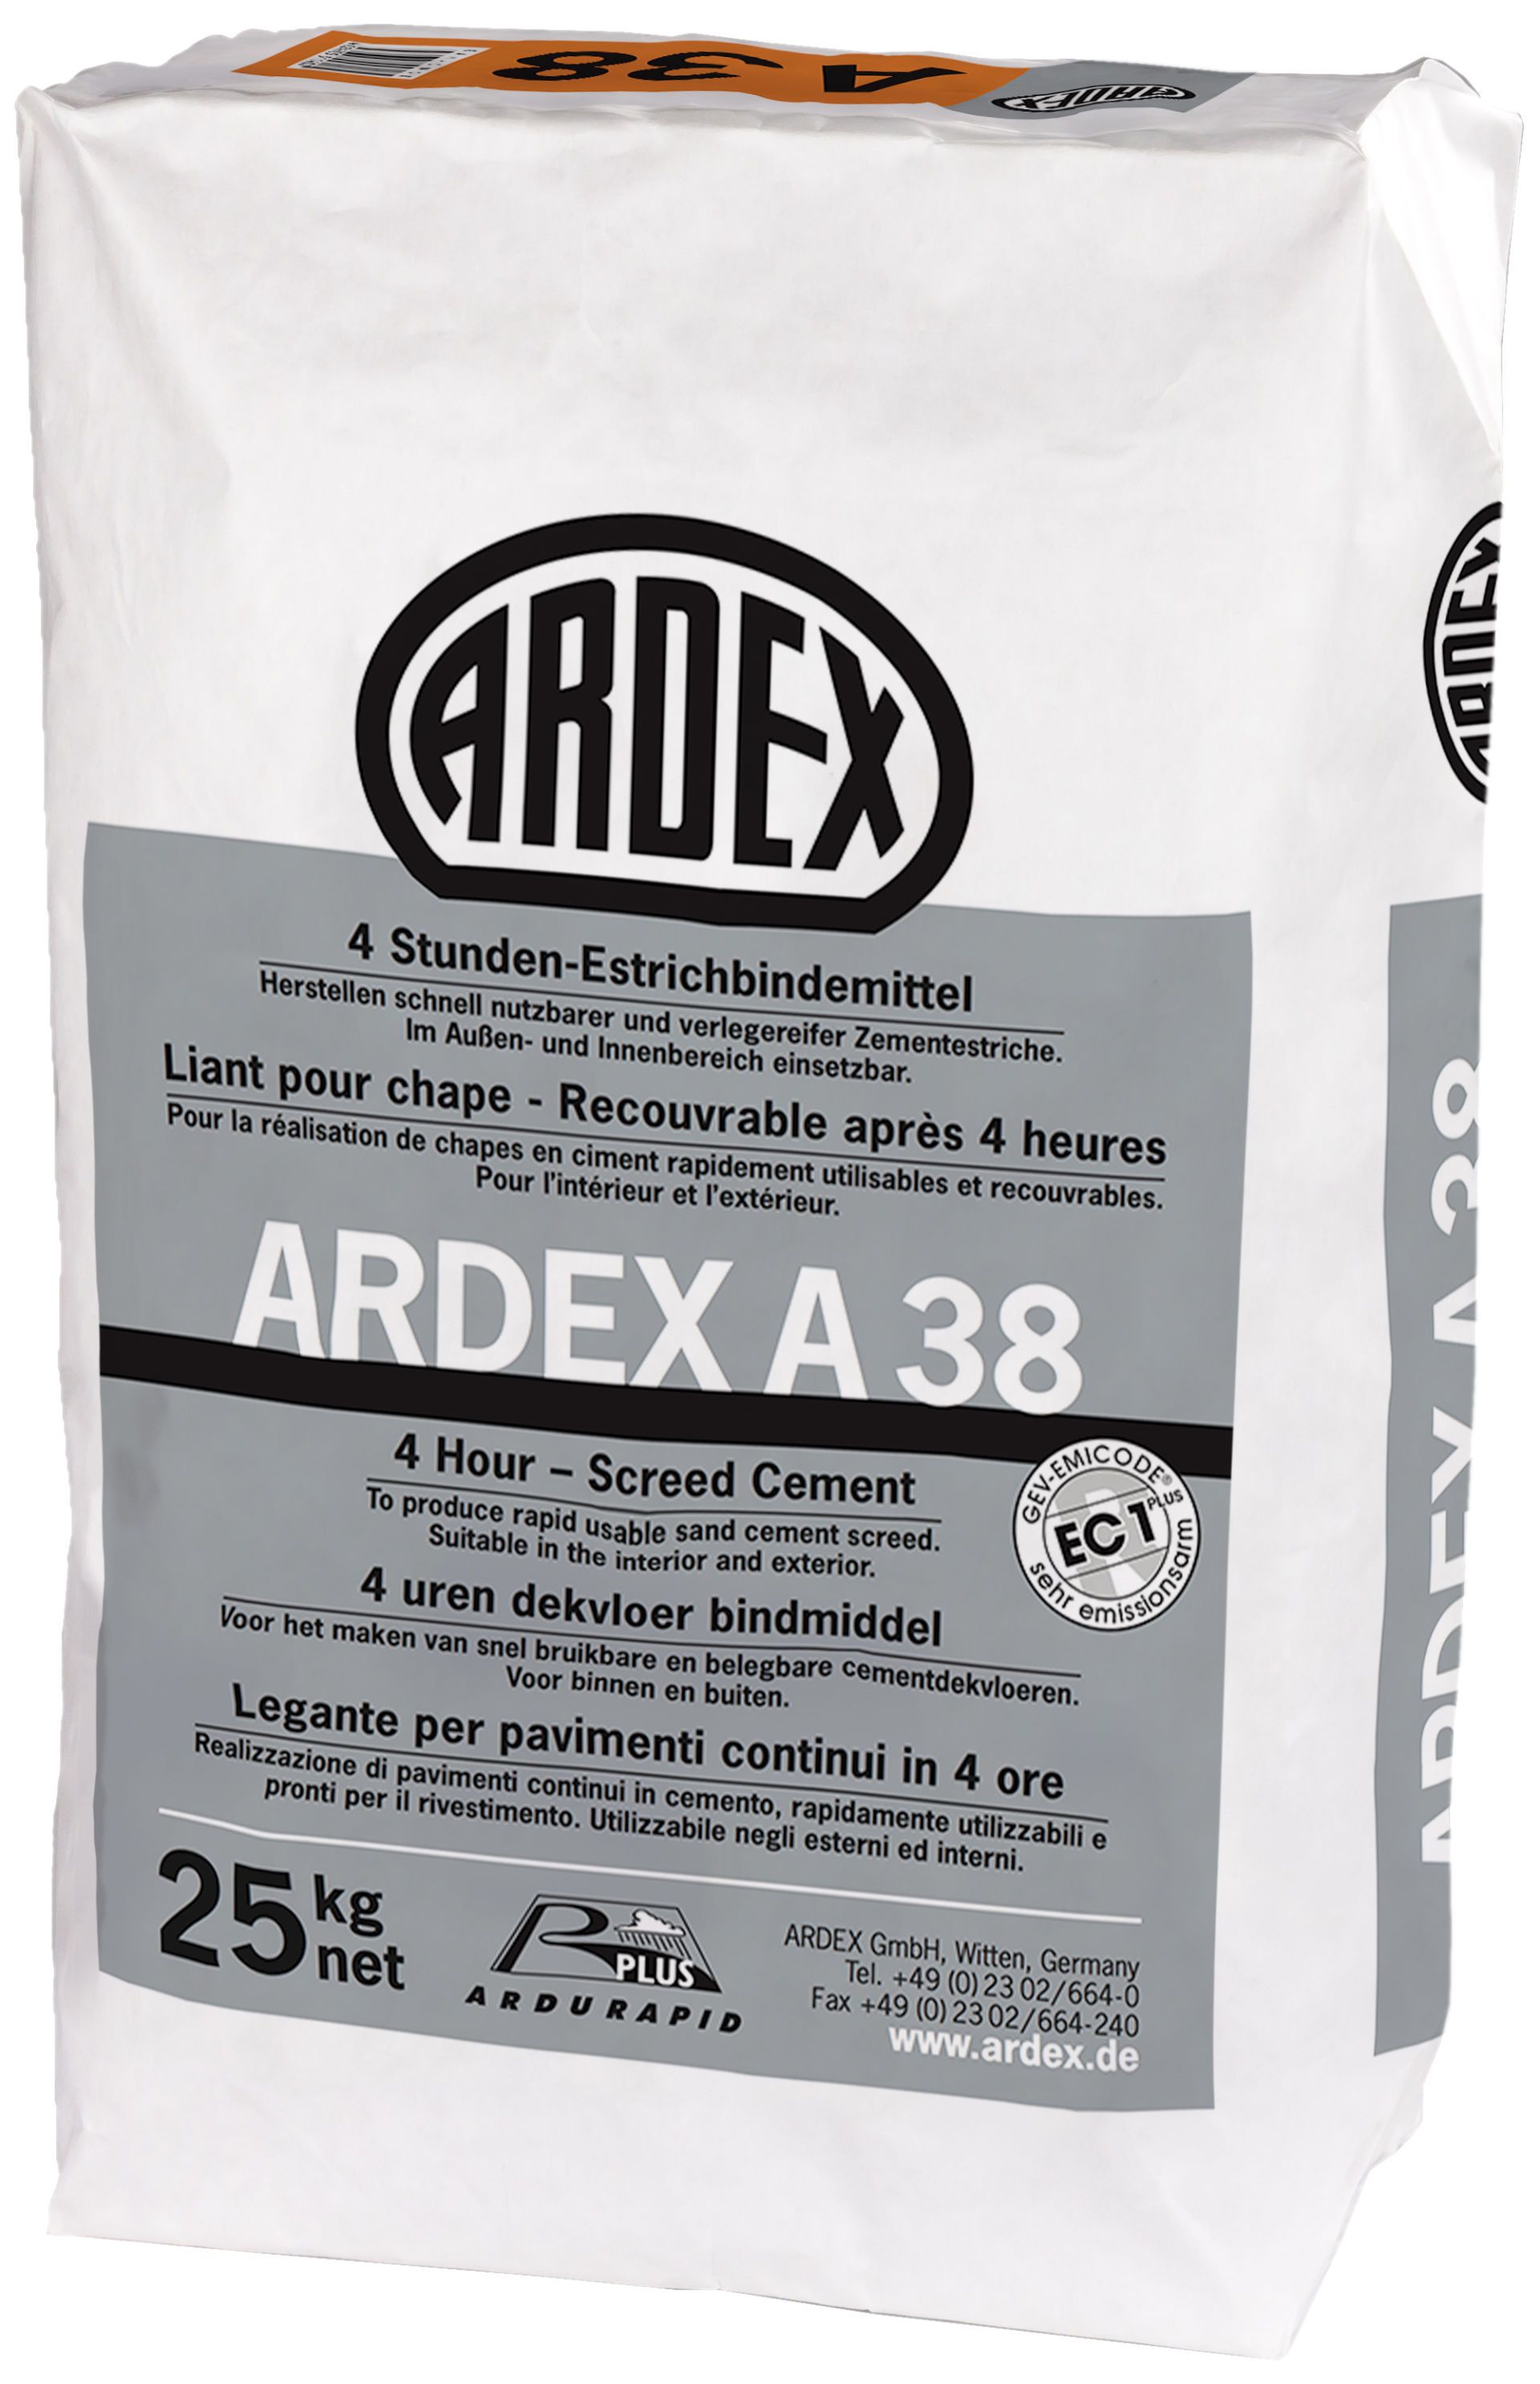 ARDEX A38 25 kg 4-Stunden-Estrichbindemittel